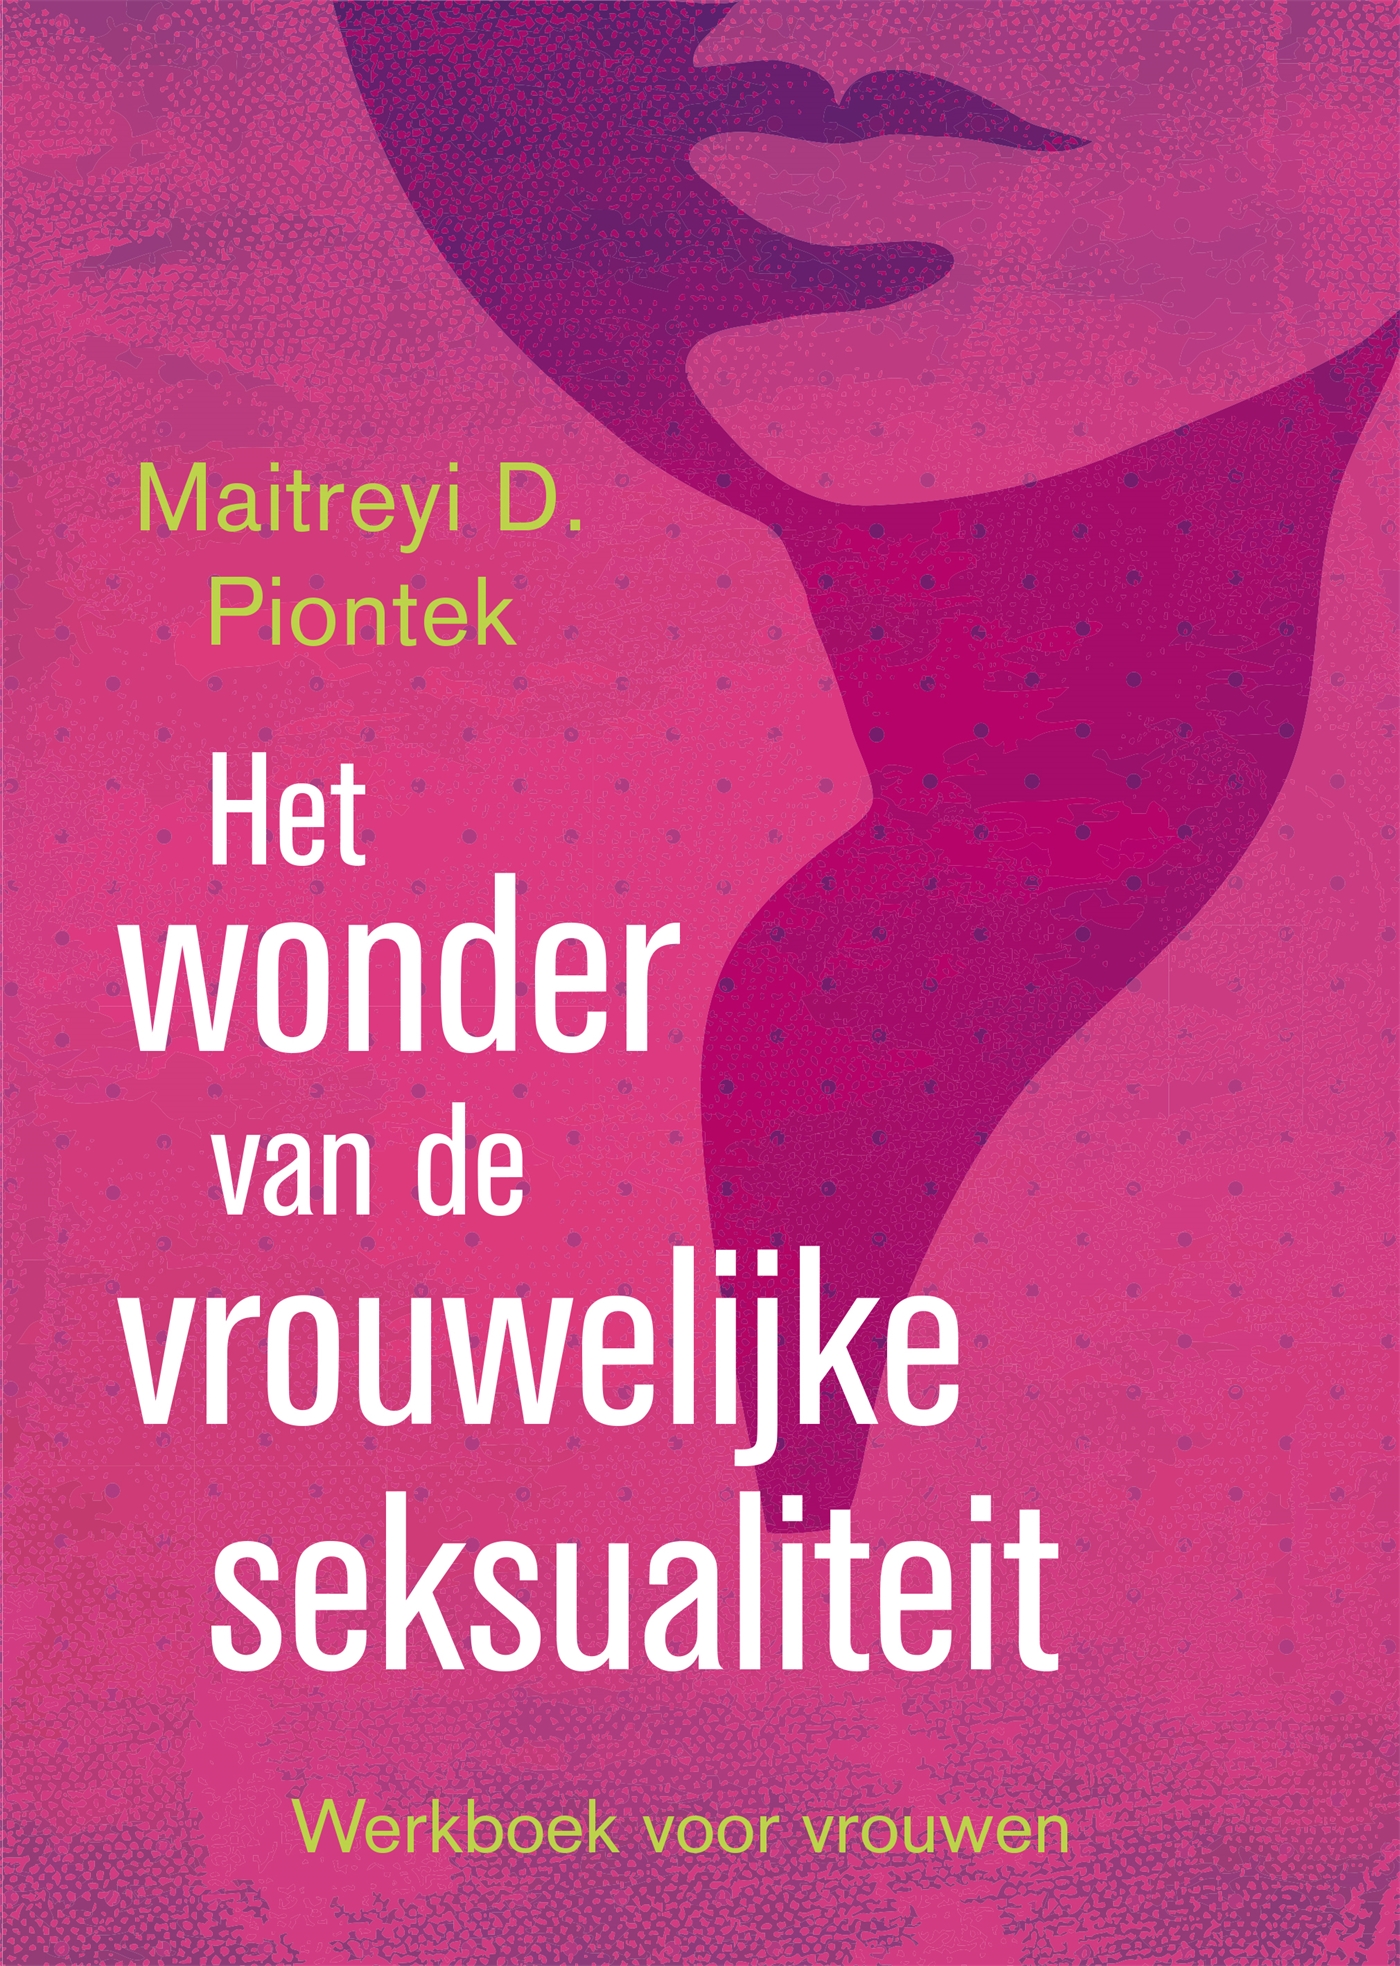 Het wonder van de vrouwelijke seksualiteit (Ebook)